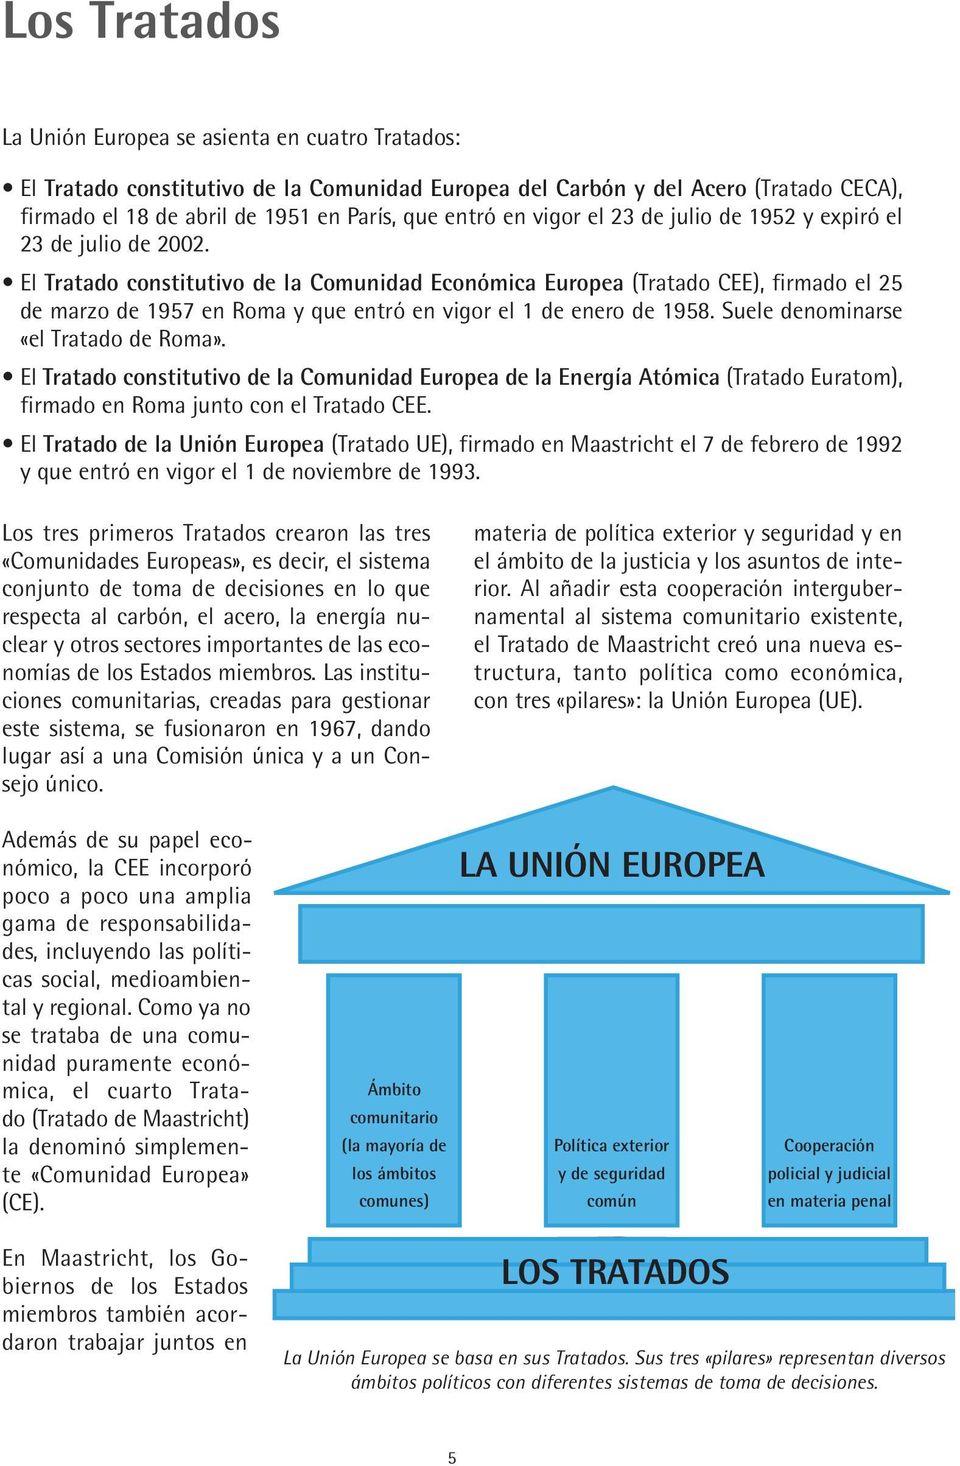 El Tratado constitutivo de la Comunidad Económica Europea (Tratado CEE), firmado el 25 de marzo de 1957 en Roma y que entró en vigor el 1 de enero de 1958. Suele denominarse «el Tratado de Roma».